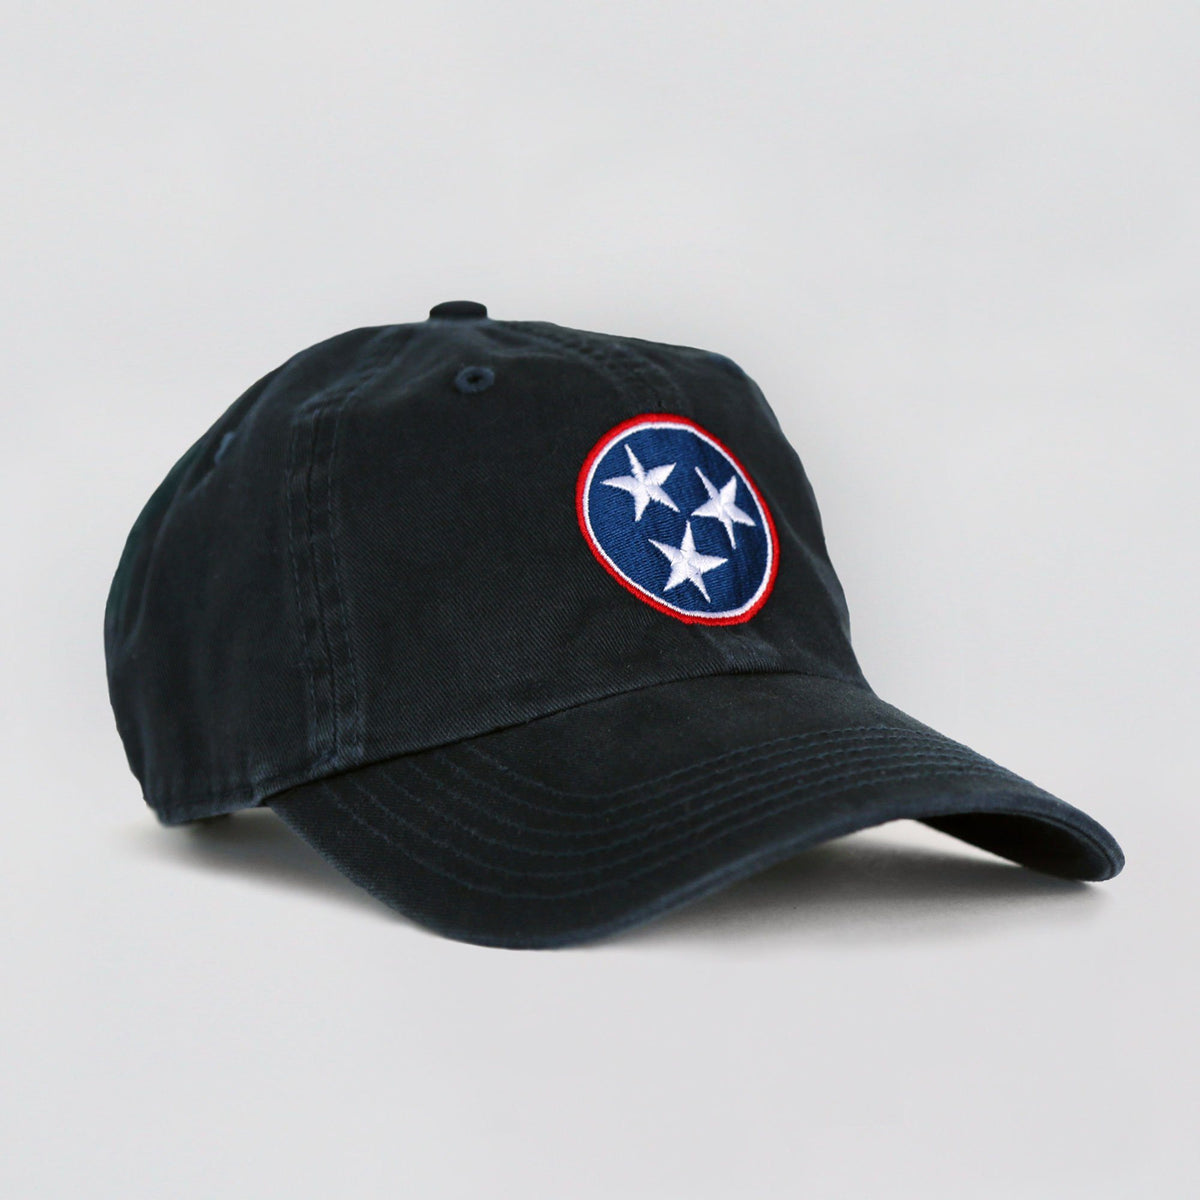 Tennessee Tri-Star Hat